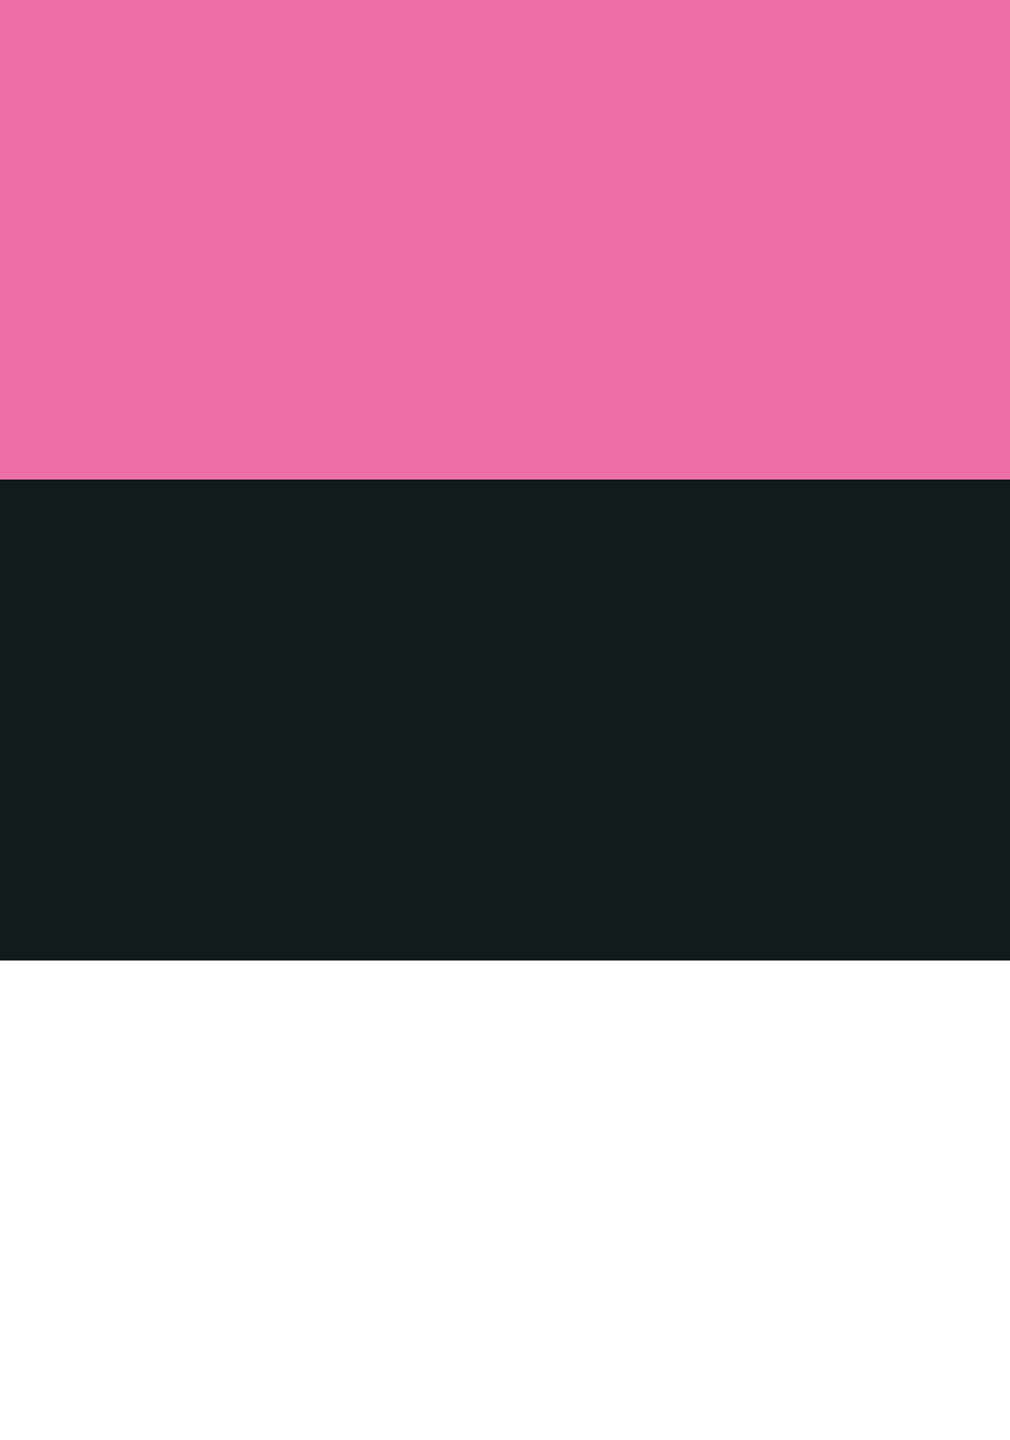 Se Lakridskonfekt - Pink, sort og hvid af Ten Valleys hos Illux.dk